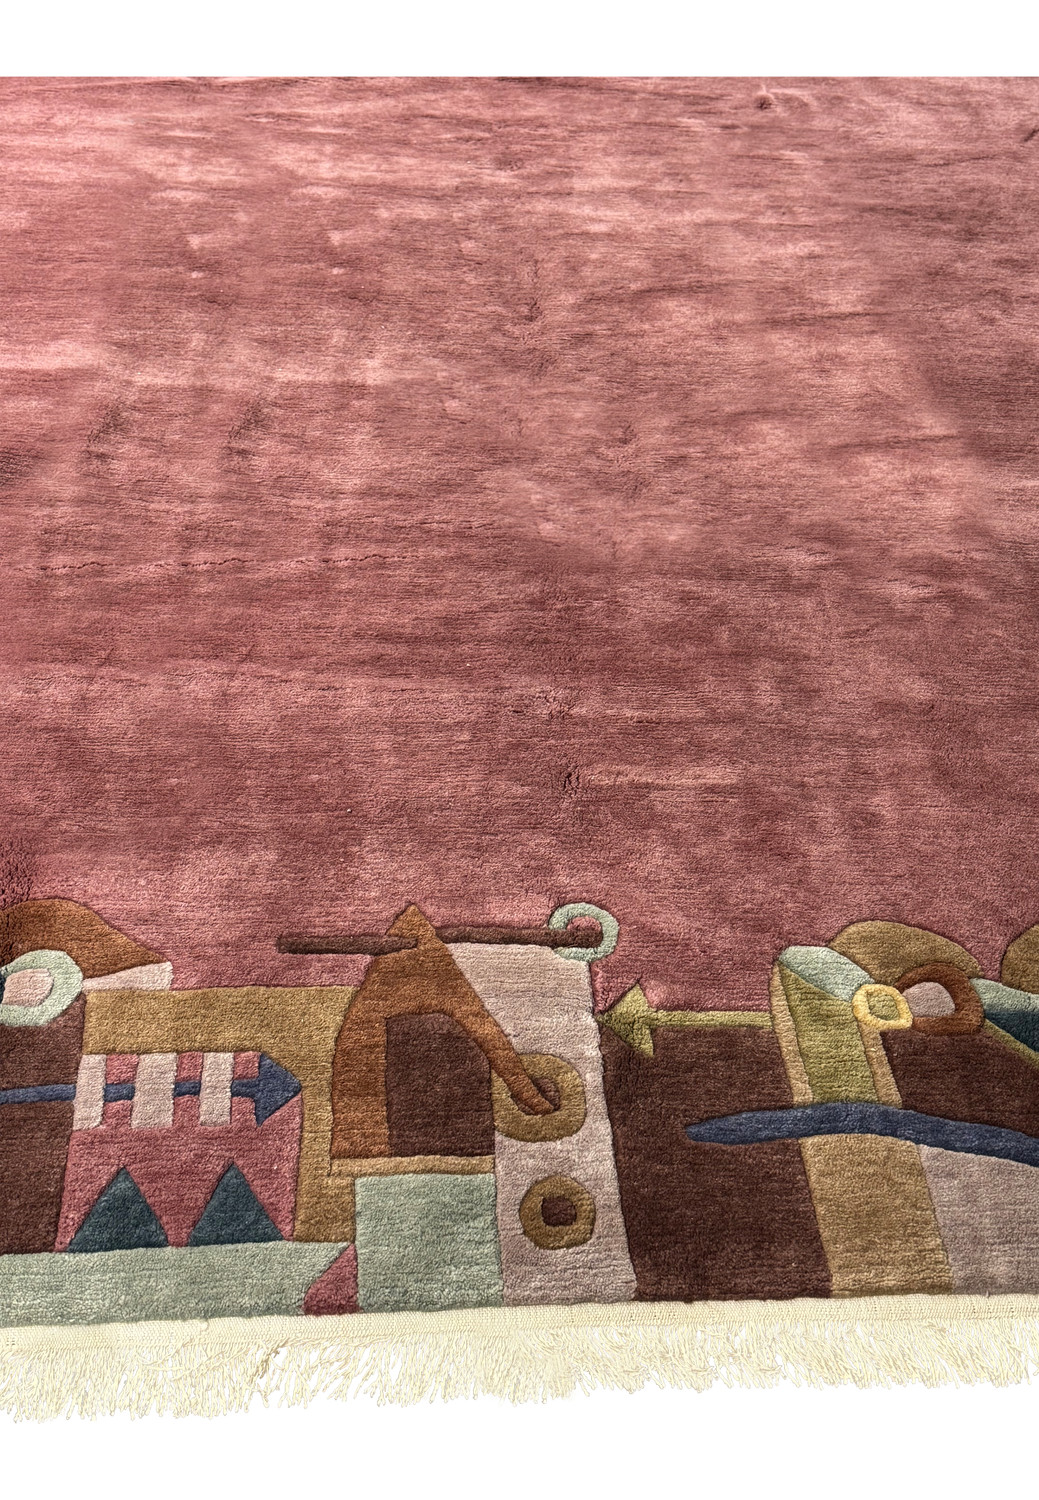 Corner detail of plush modern Tibet rug displaying fine weaving and fringe